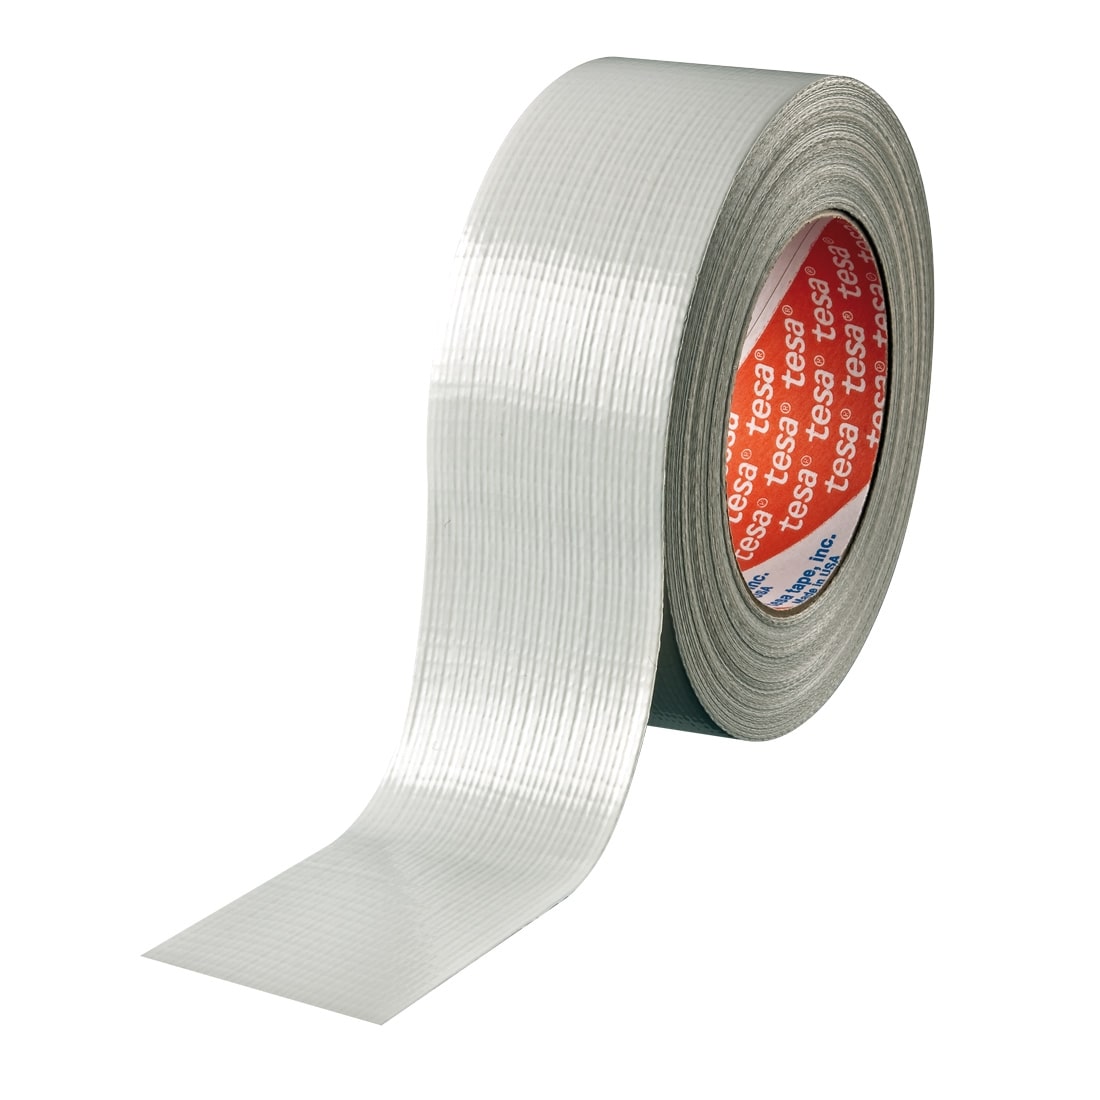 Nastro adesivo americano Ultra forte - Duct tape 8200 (grigio)